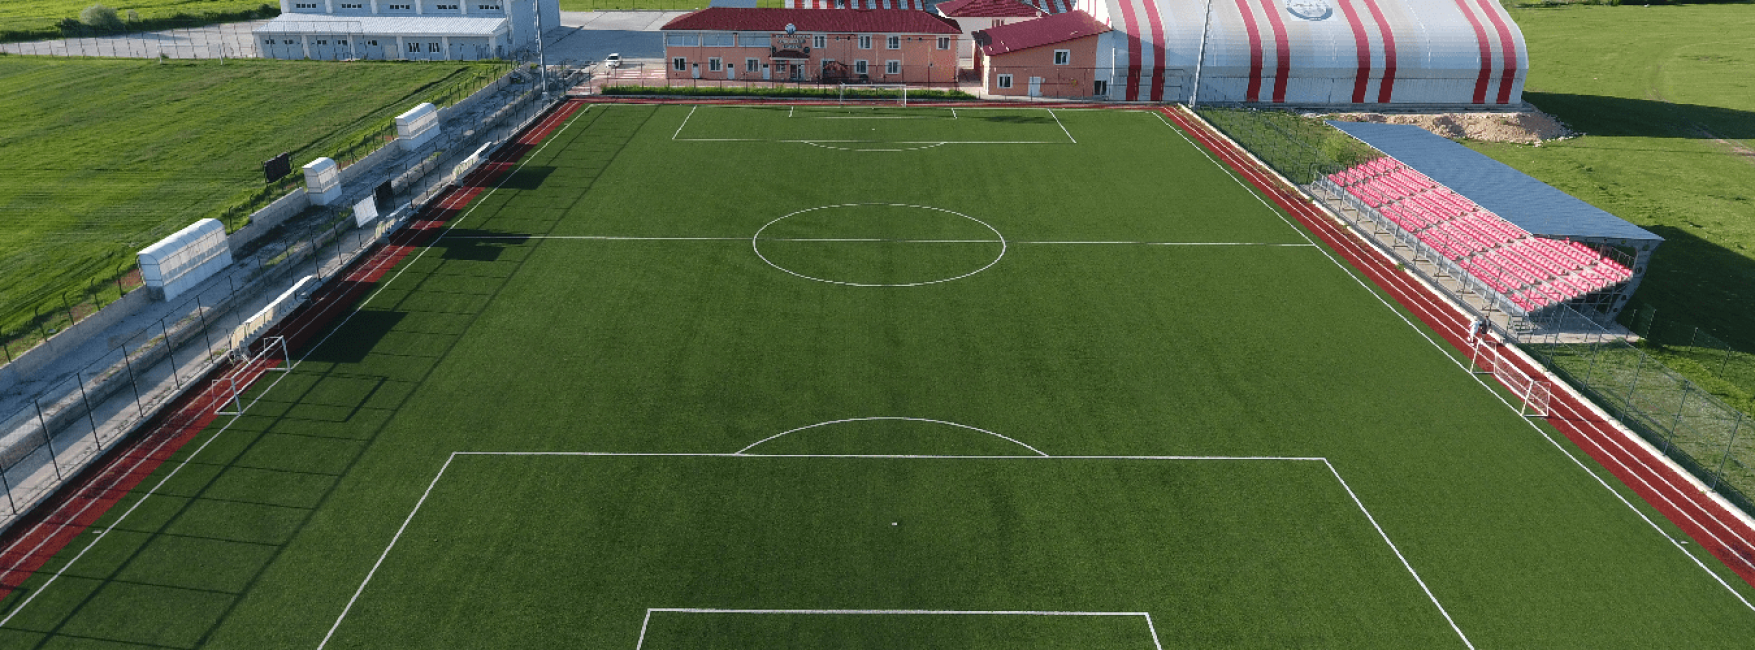 Samsun Ladik Spor Salonu ve Futbol Sahası <br><br>